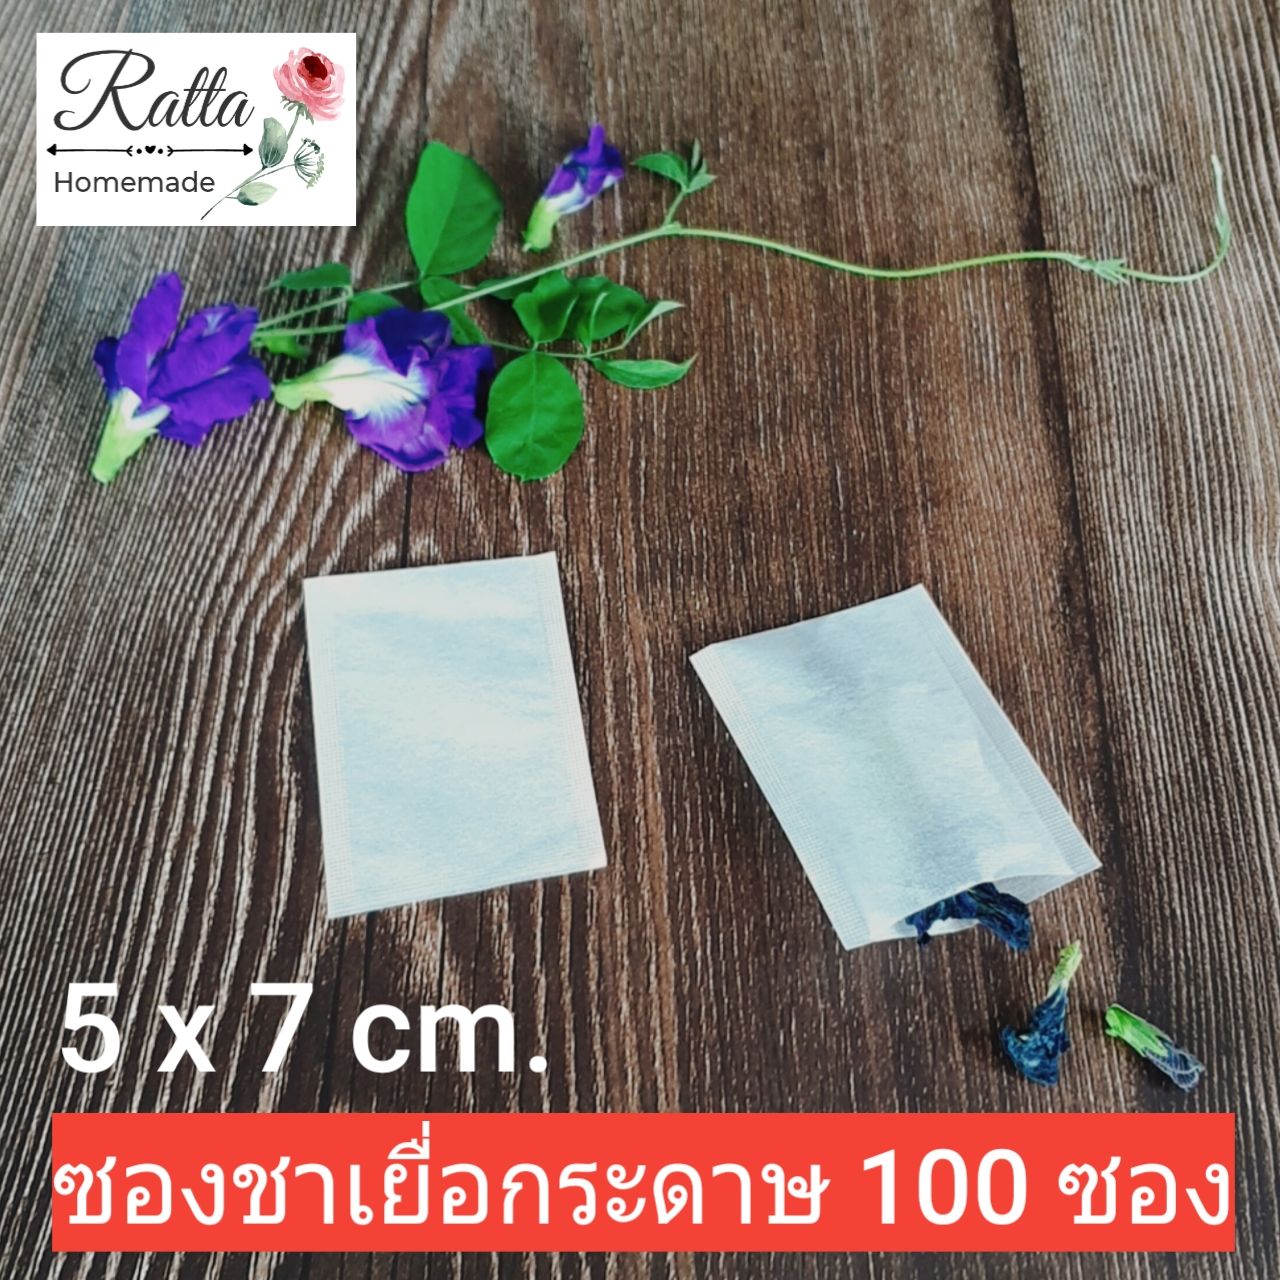 ซองชาเยื่อกระดาษ 5x7 cm.100 ซอง (Tea bags 100 pcs.)